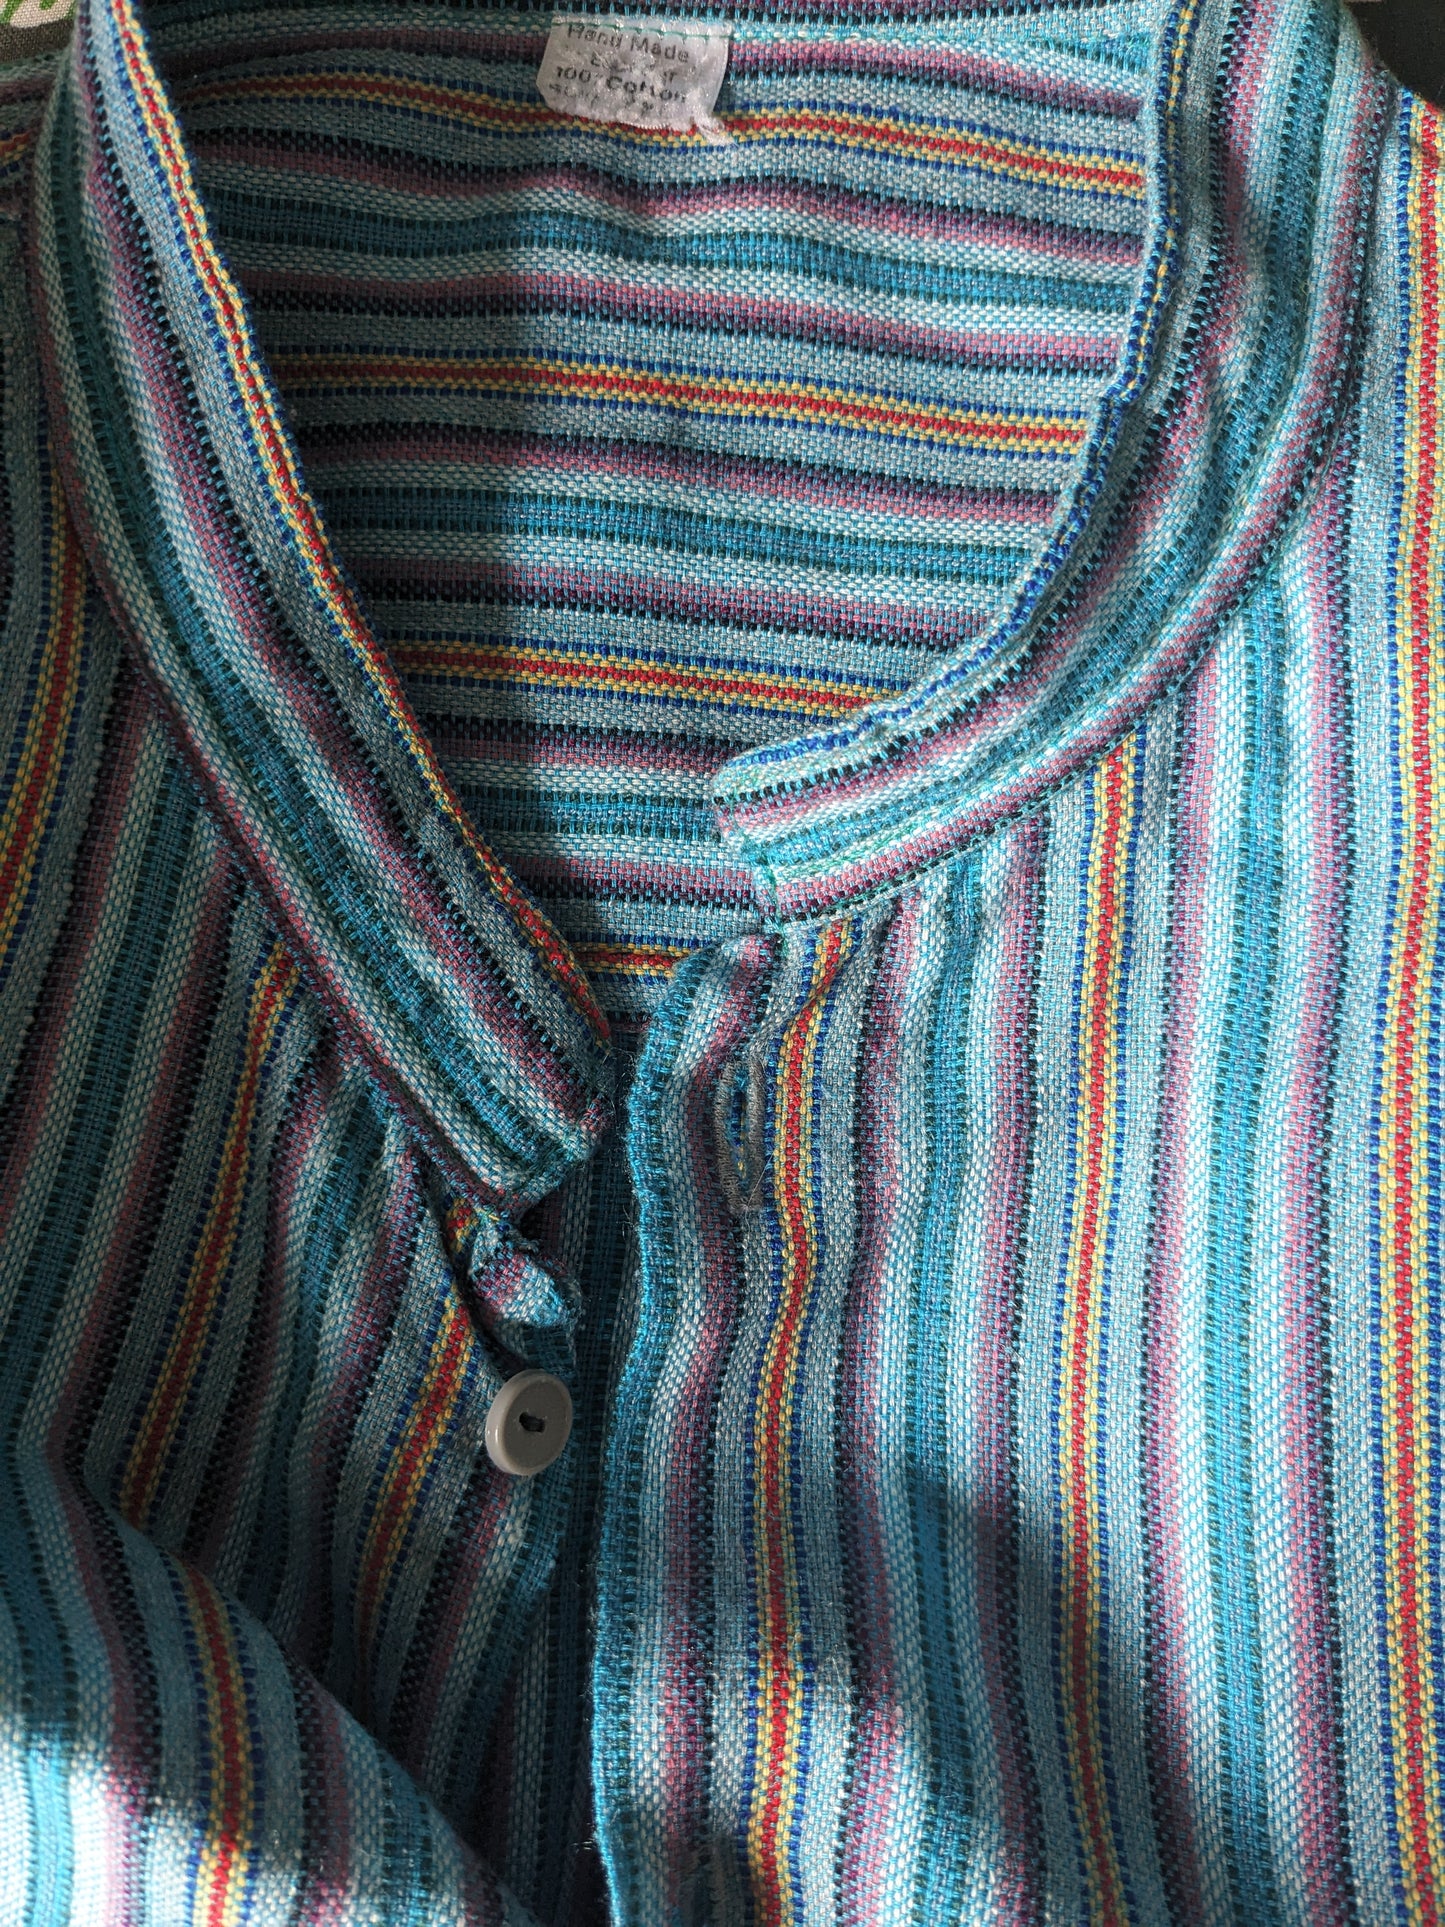 Chemise vintage avec mao / agriculteur / col debout. Blue violet rouge jaune rayé. Taille xl.